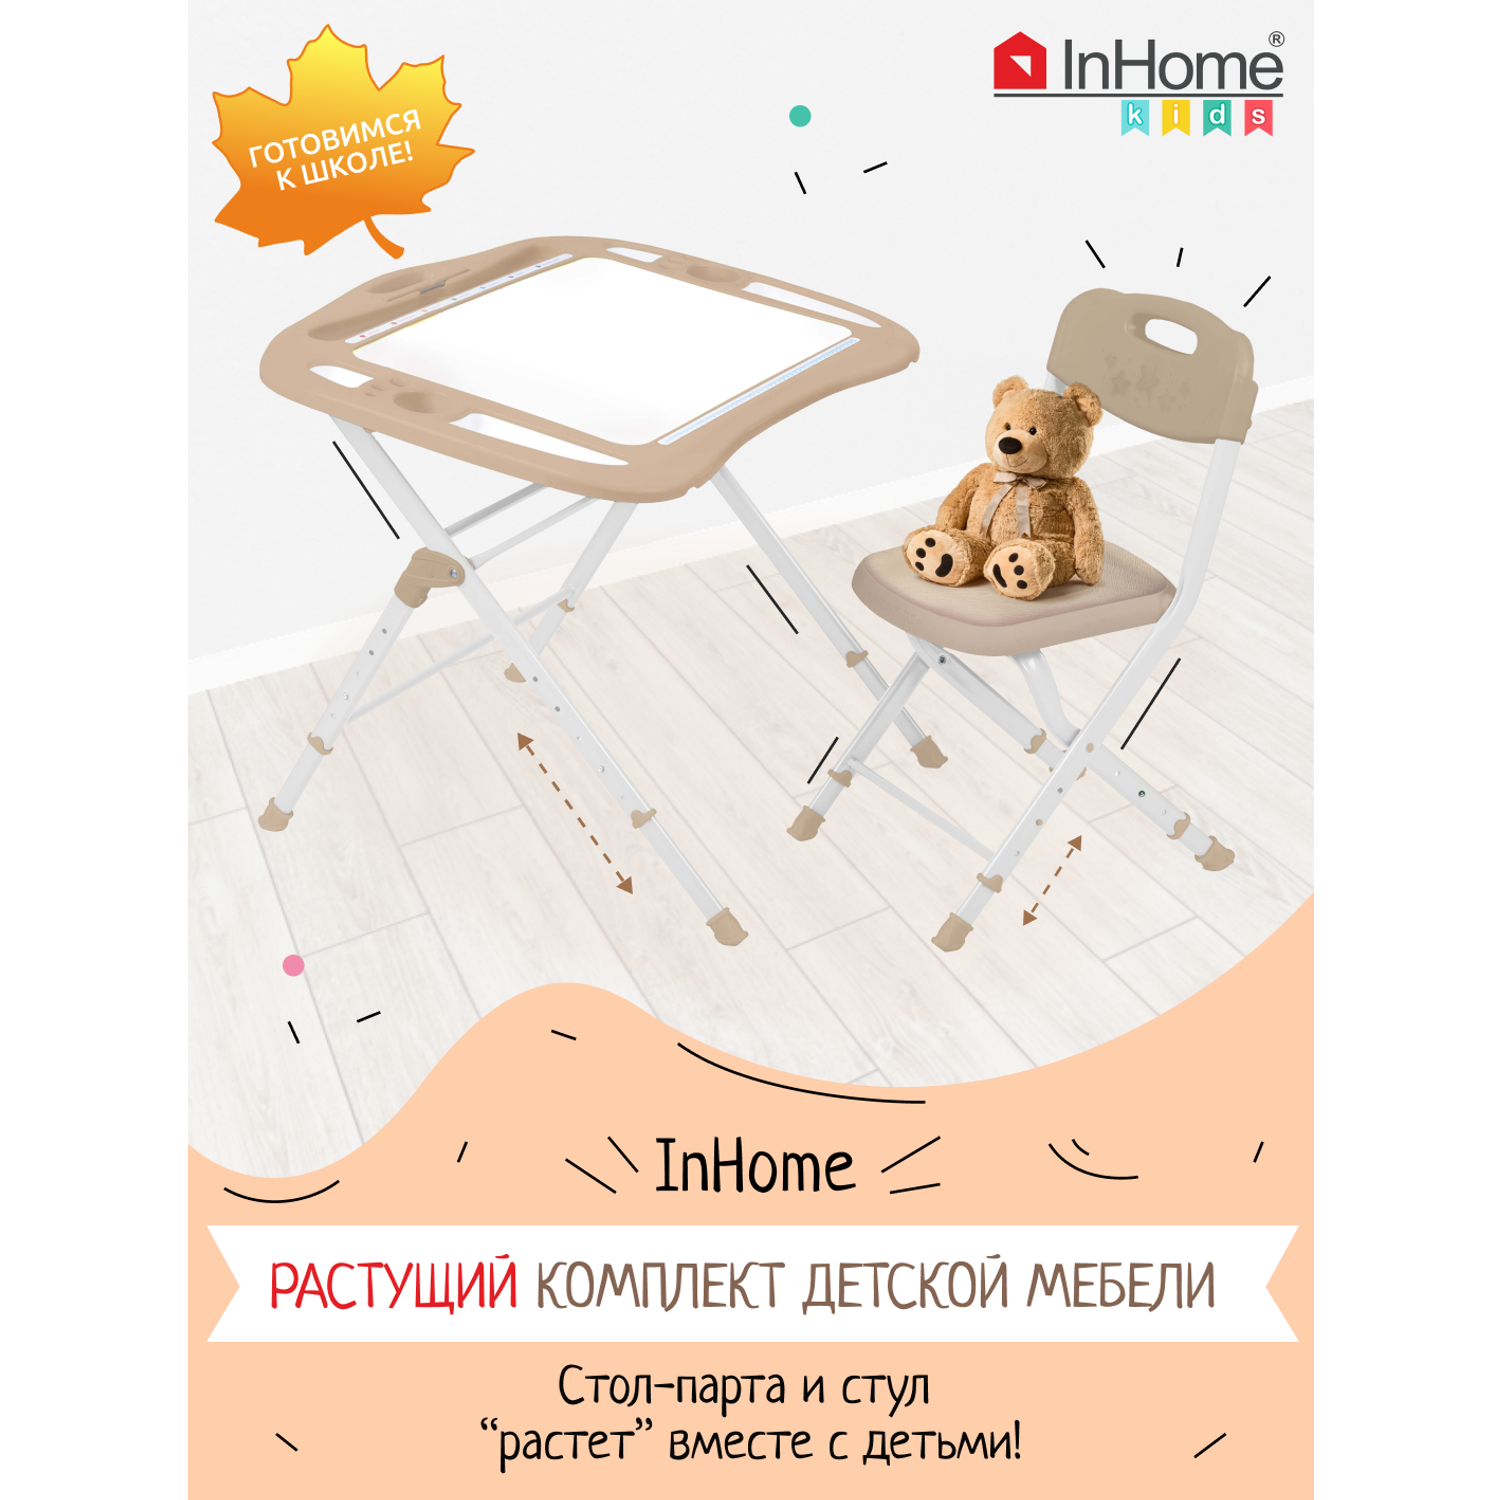 Комплект детской мебели InHome стол-парта и мягкий стульчик - фото 1